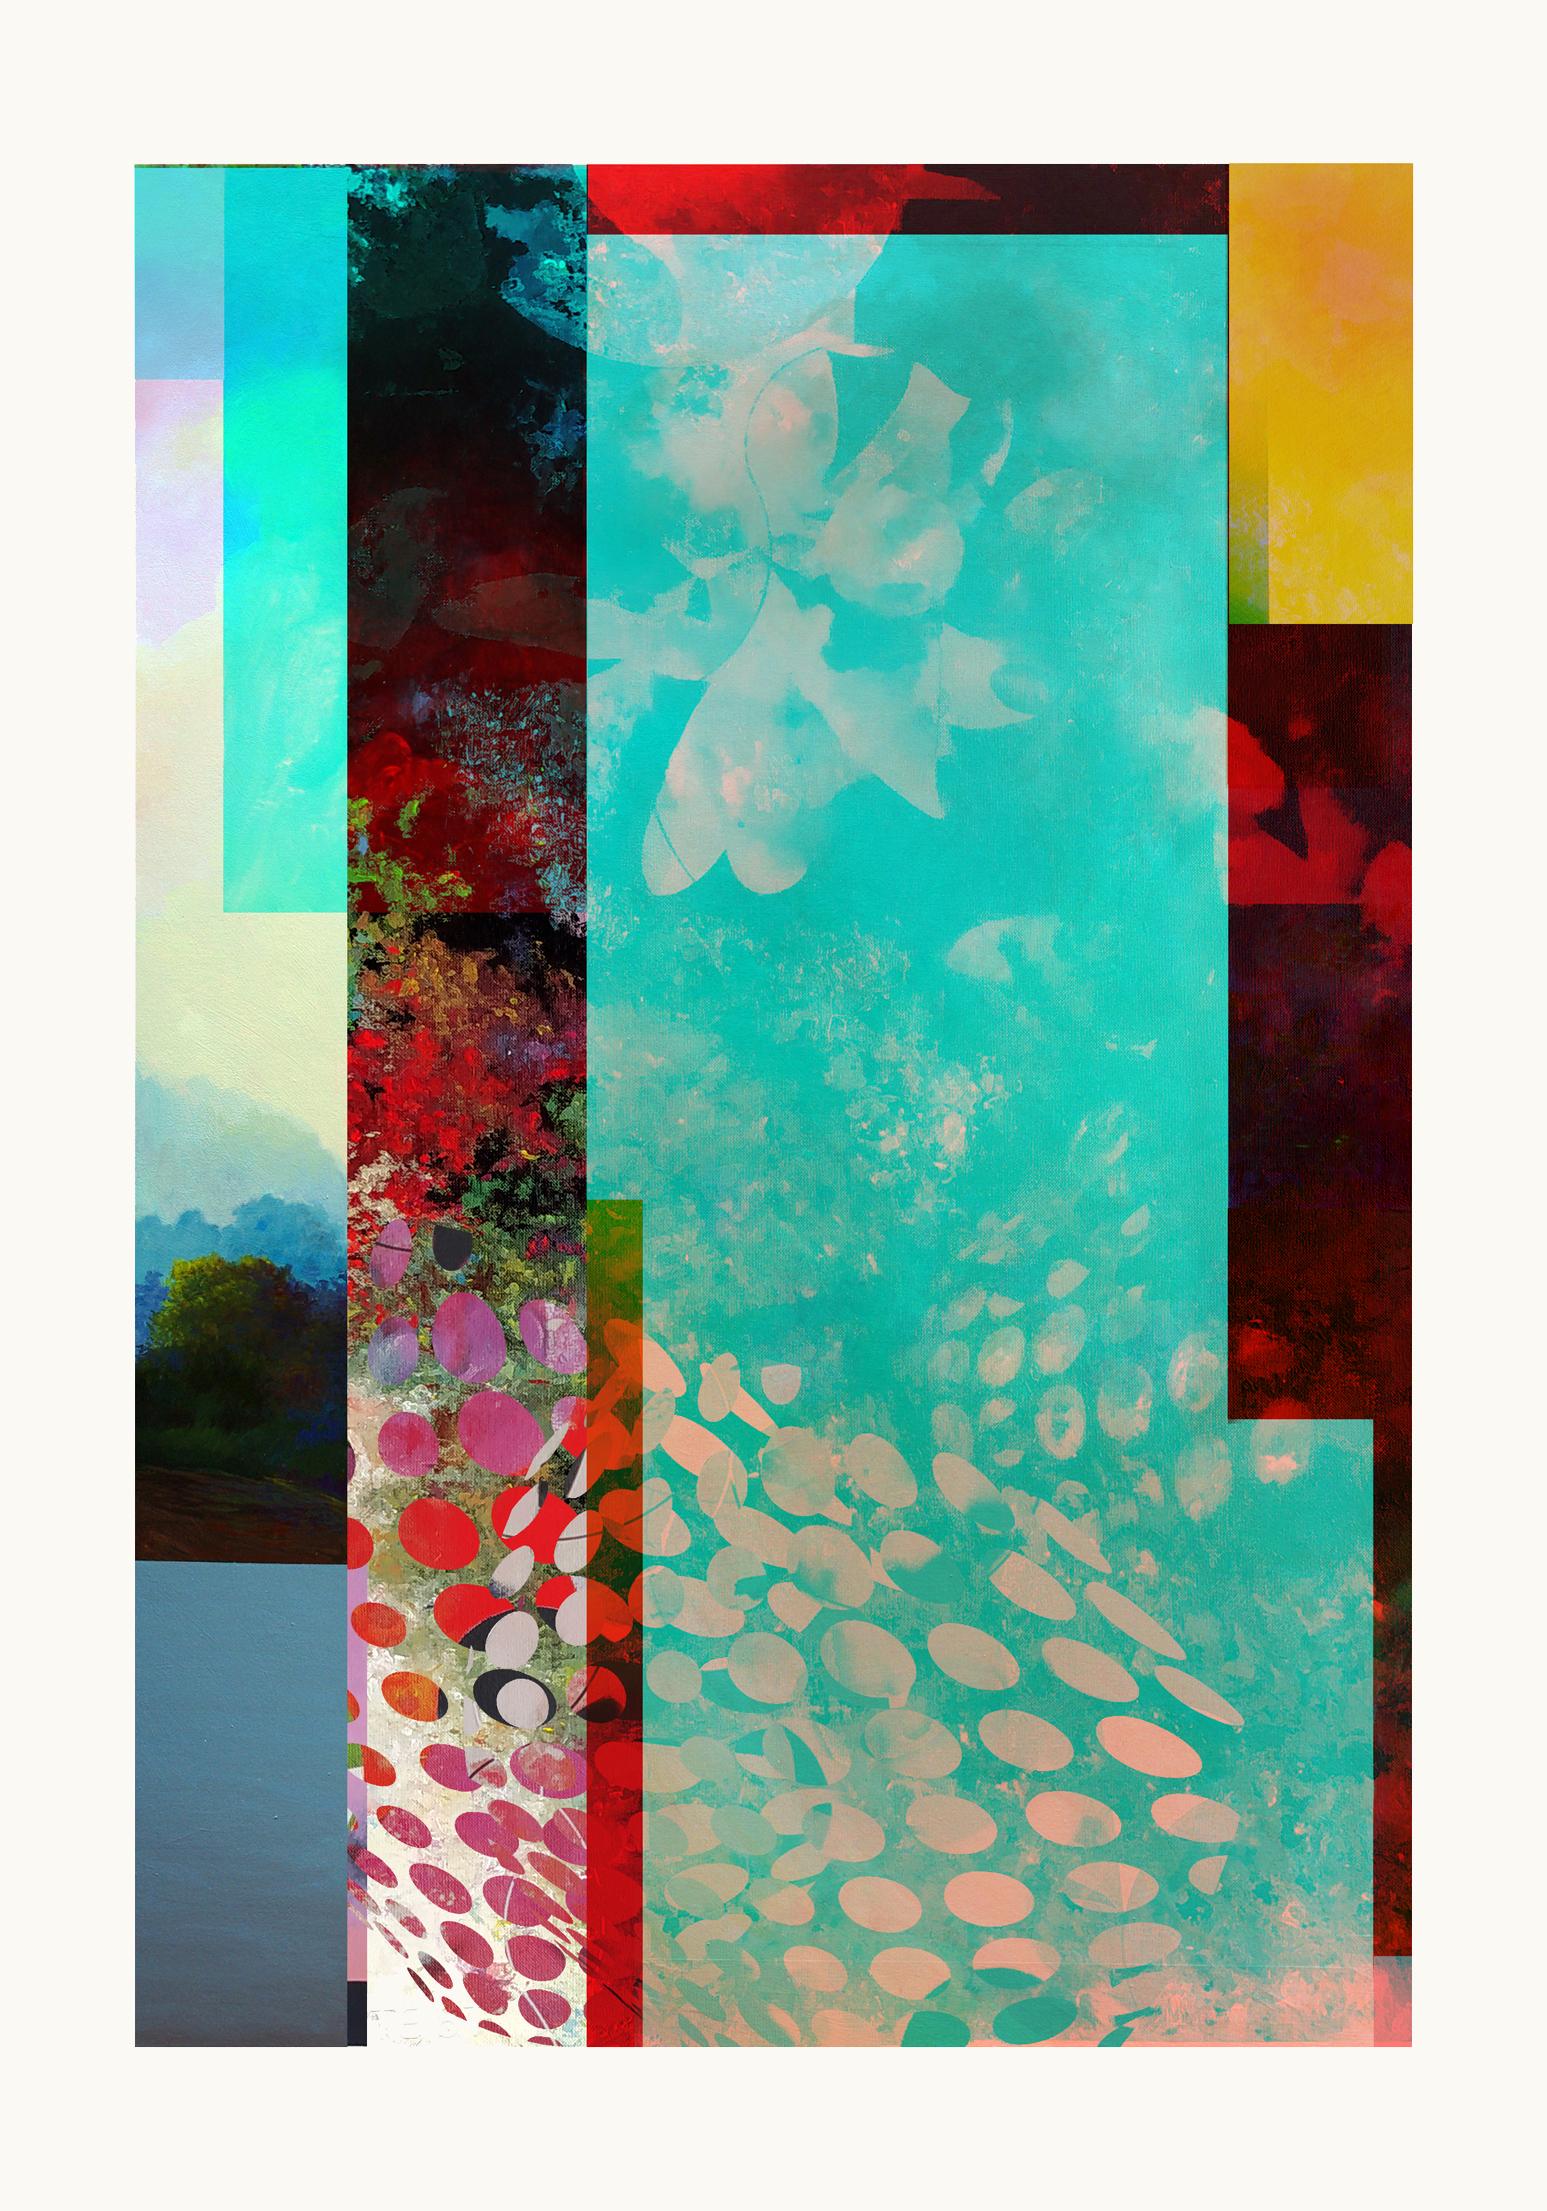 Francisco Nicolás Abstract Print – Tropico-Zeitgenössisch, Abstrakt, Minimalismus, Moderne, Expressionismus, Surrealistisch